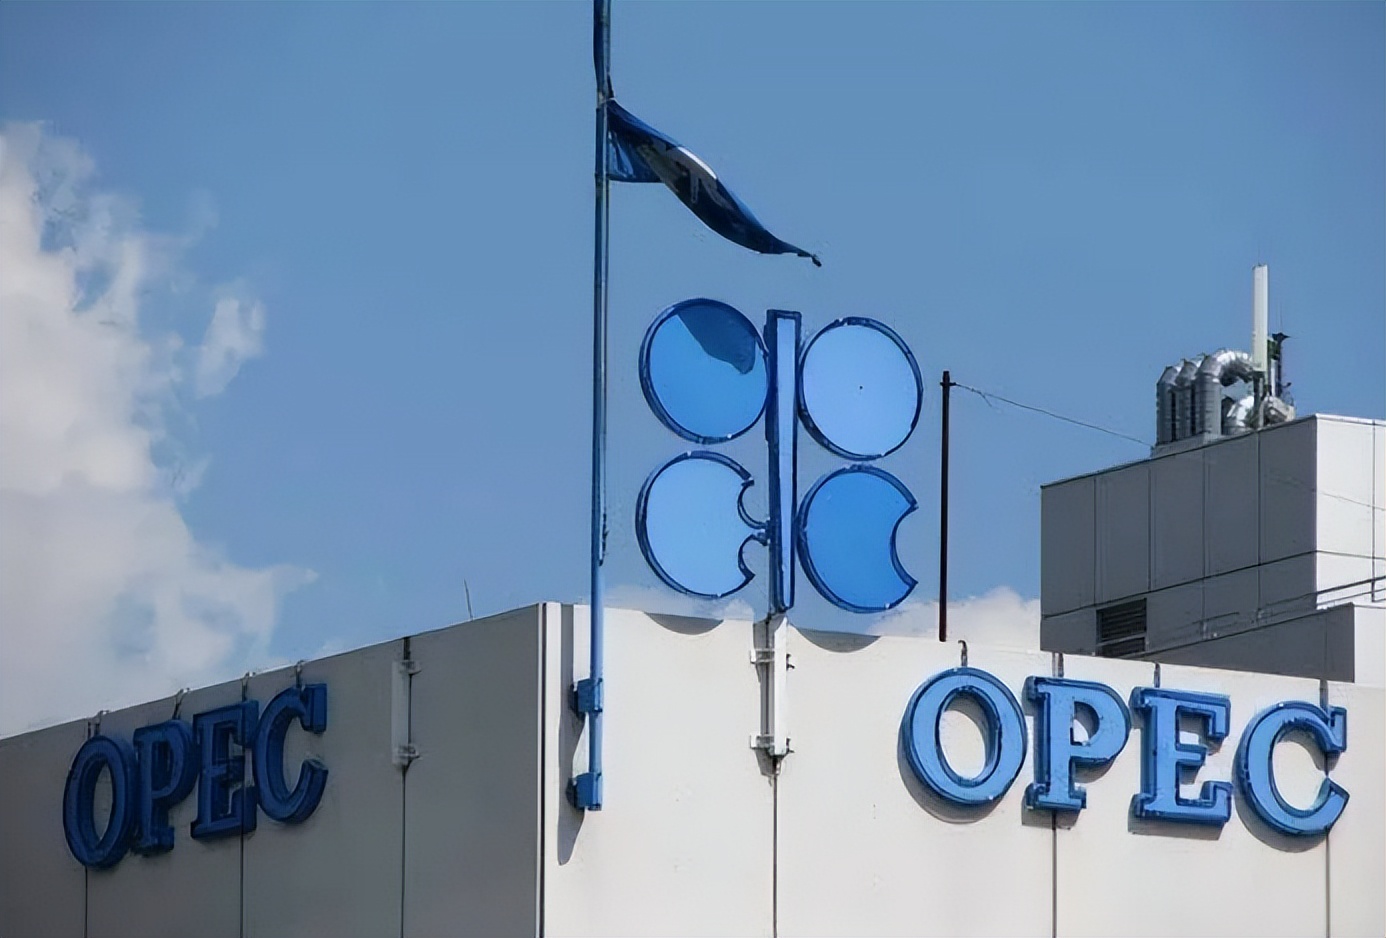 俄罗斯原油遭到各方制裁 石油价格进一步上涨 今日9:30WTI原油上涨